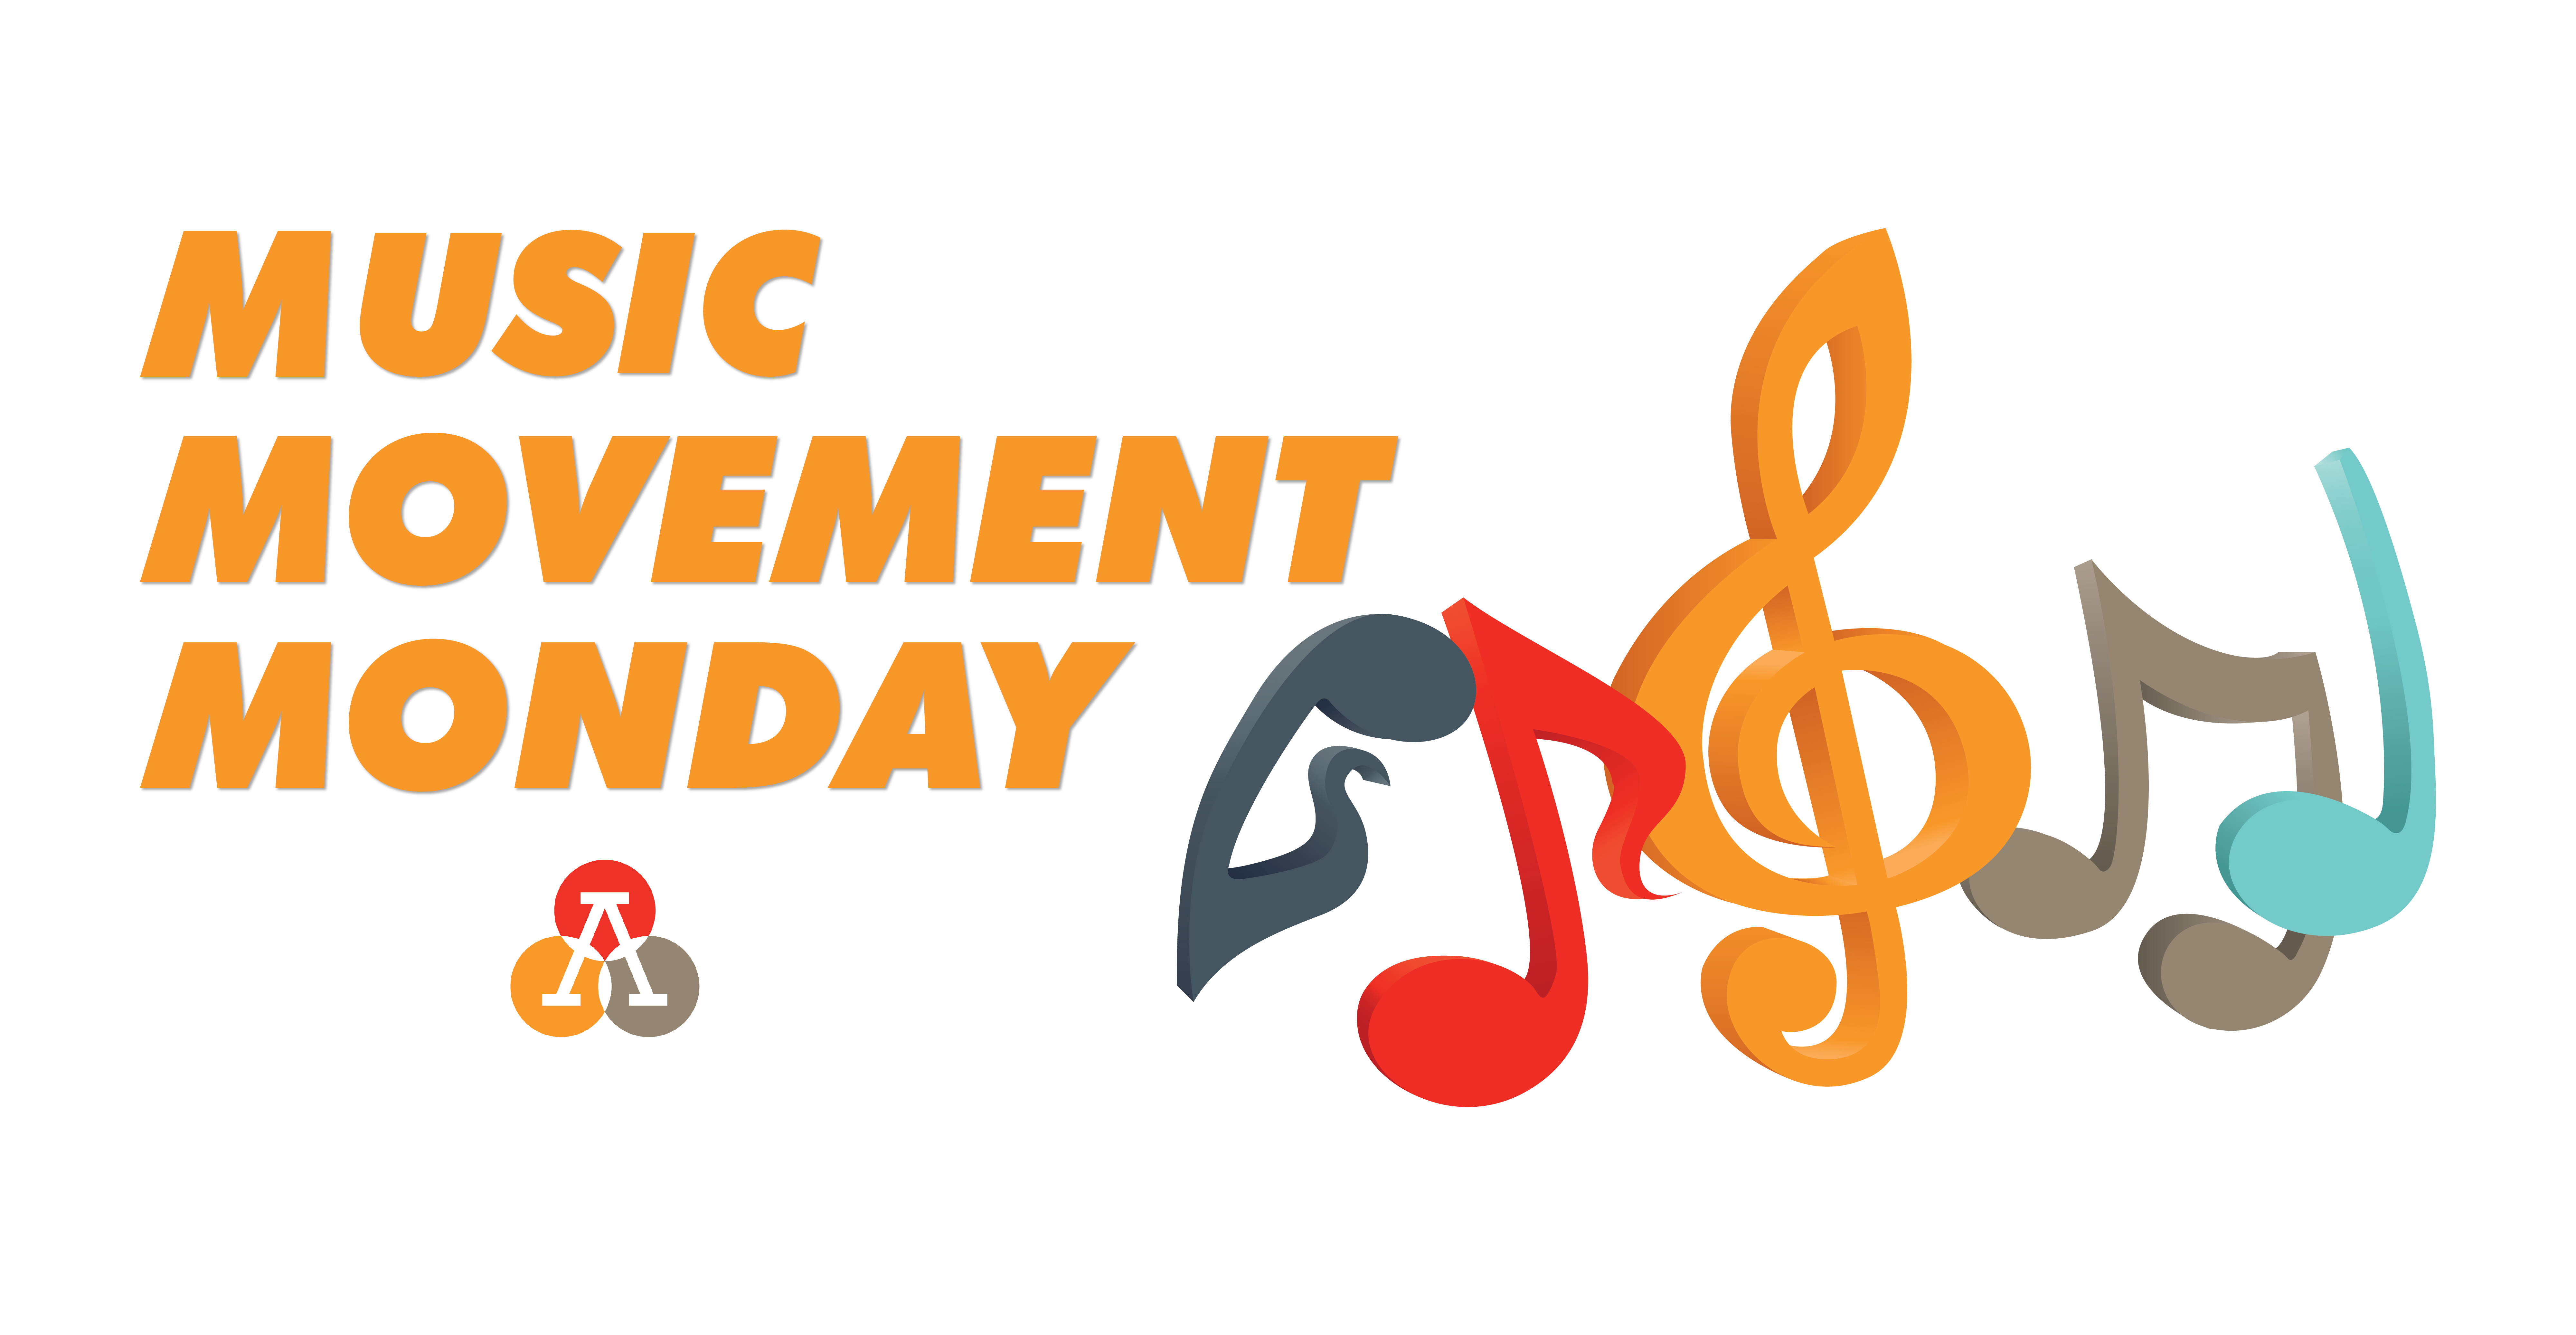 Music Movement Monday